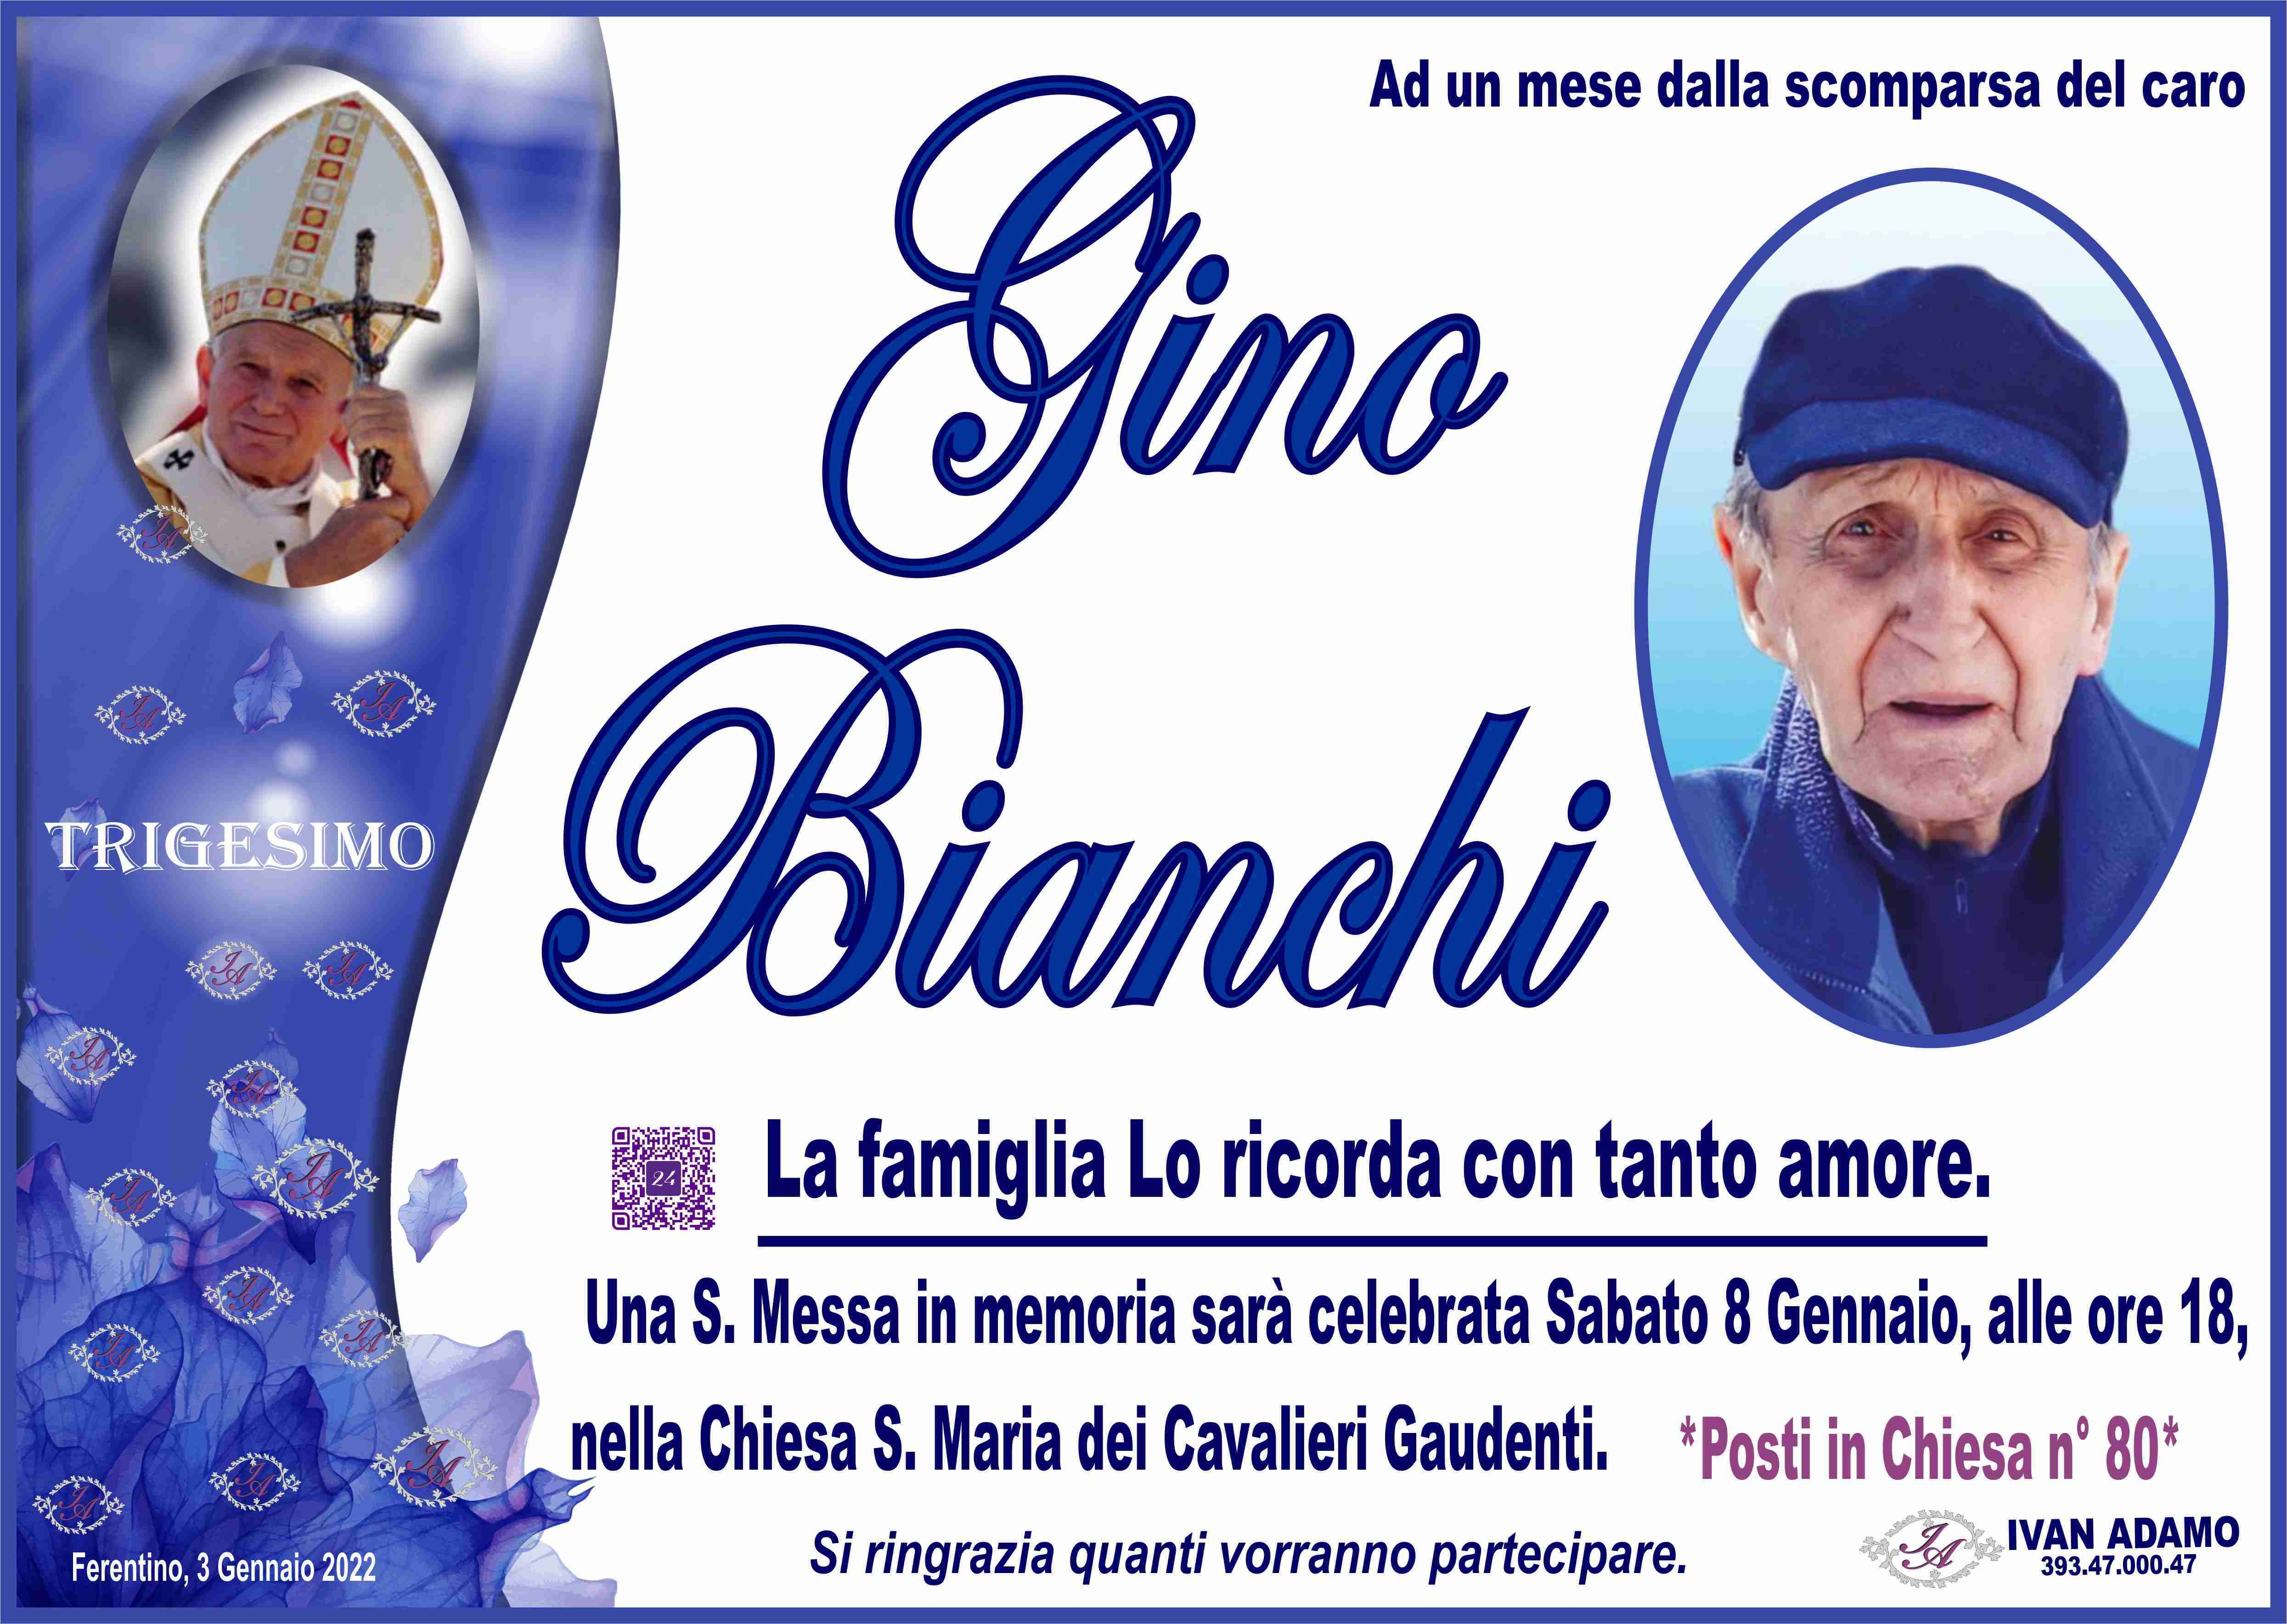 Gino Bianchi